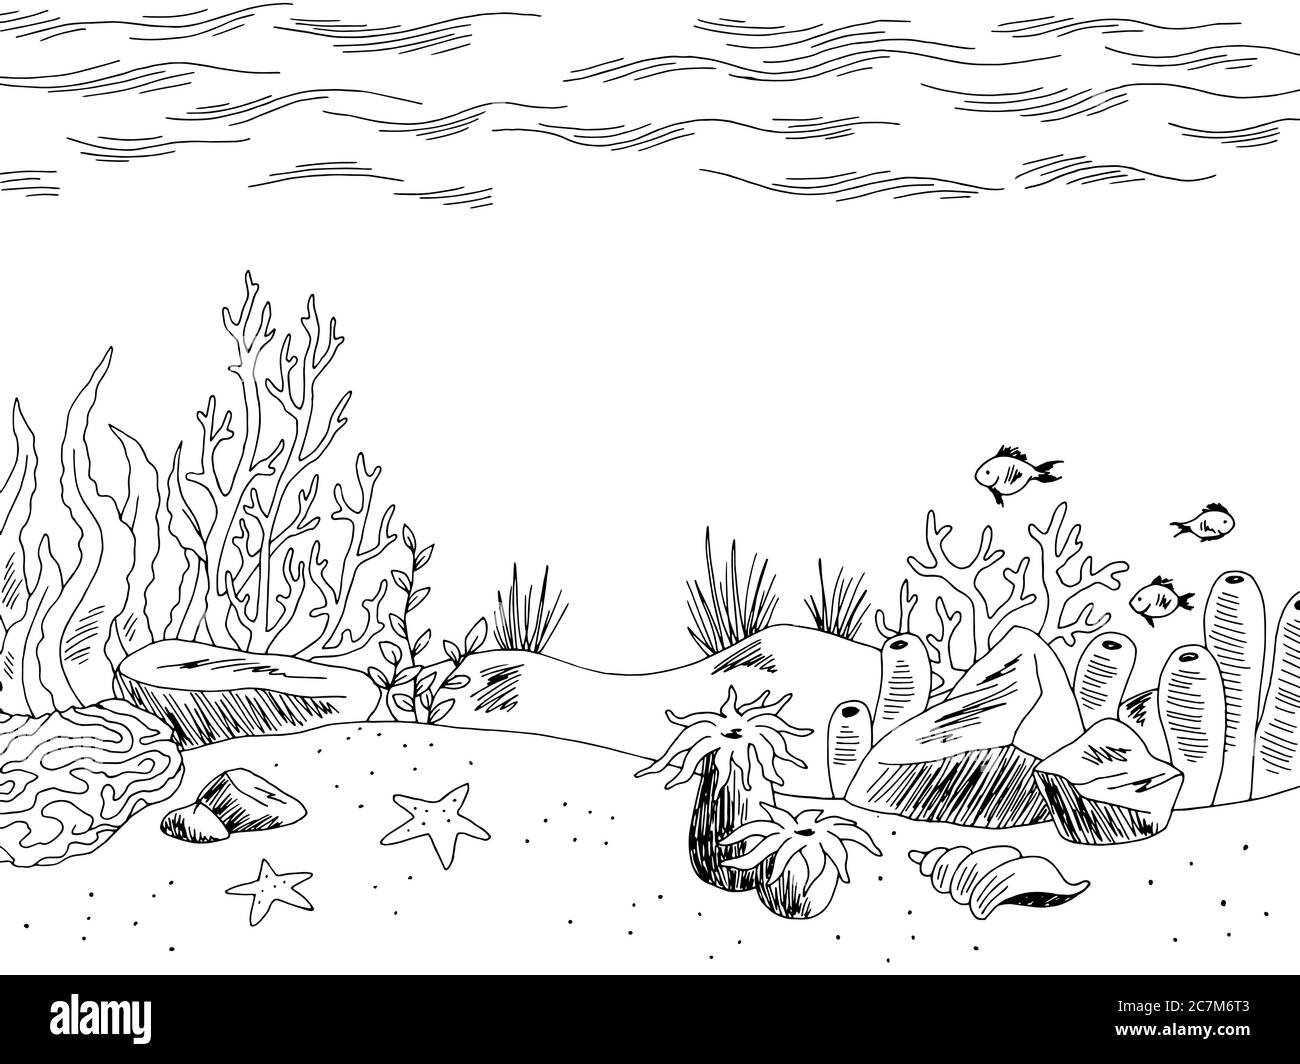 Unterwassergrafik Meer schwarz weiß Skizze Illustration Vektor Stock Vektor